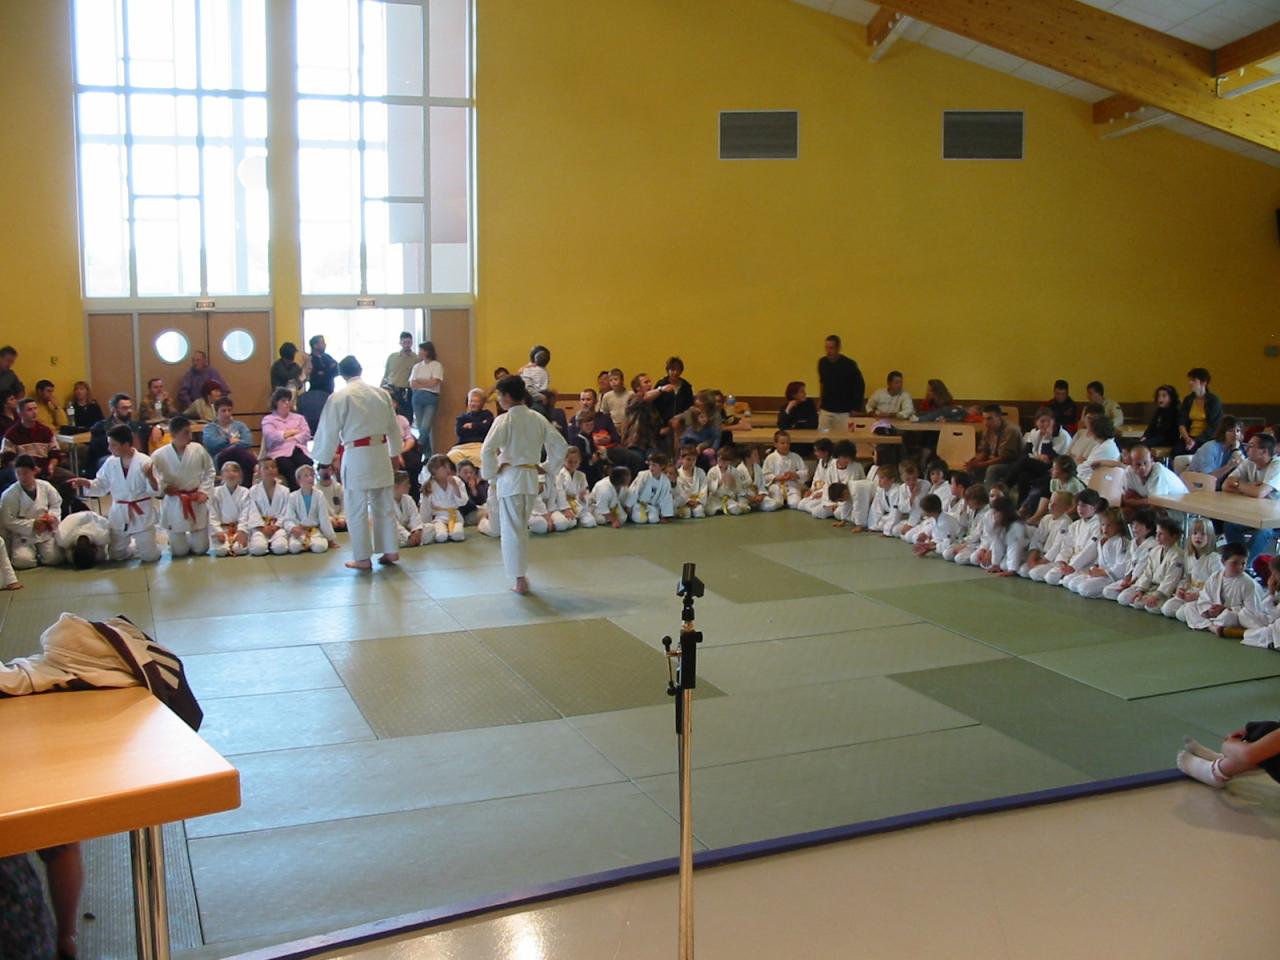 Fête du judo à Voiteur - 2001